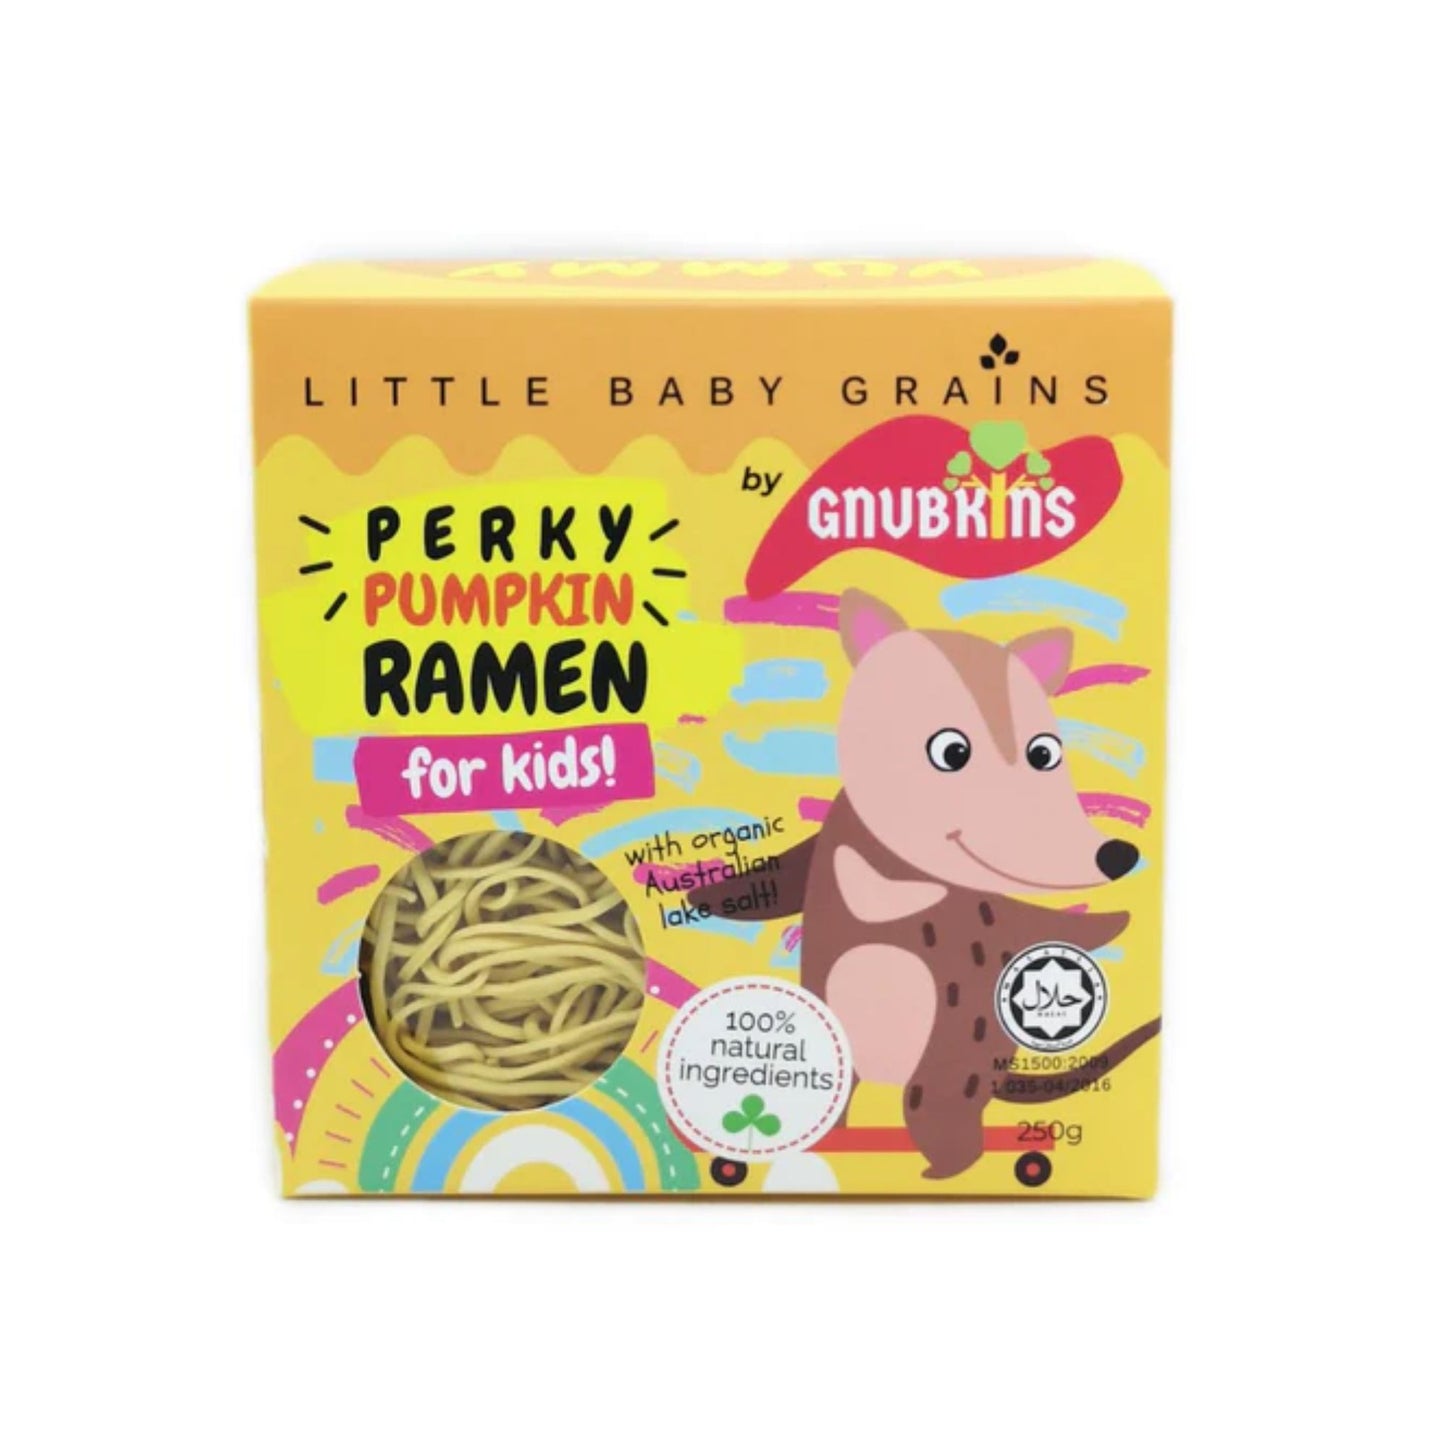 Little Baby Grains Ramen Noodles in Perky Pumpkin Ramen (12 mos +)